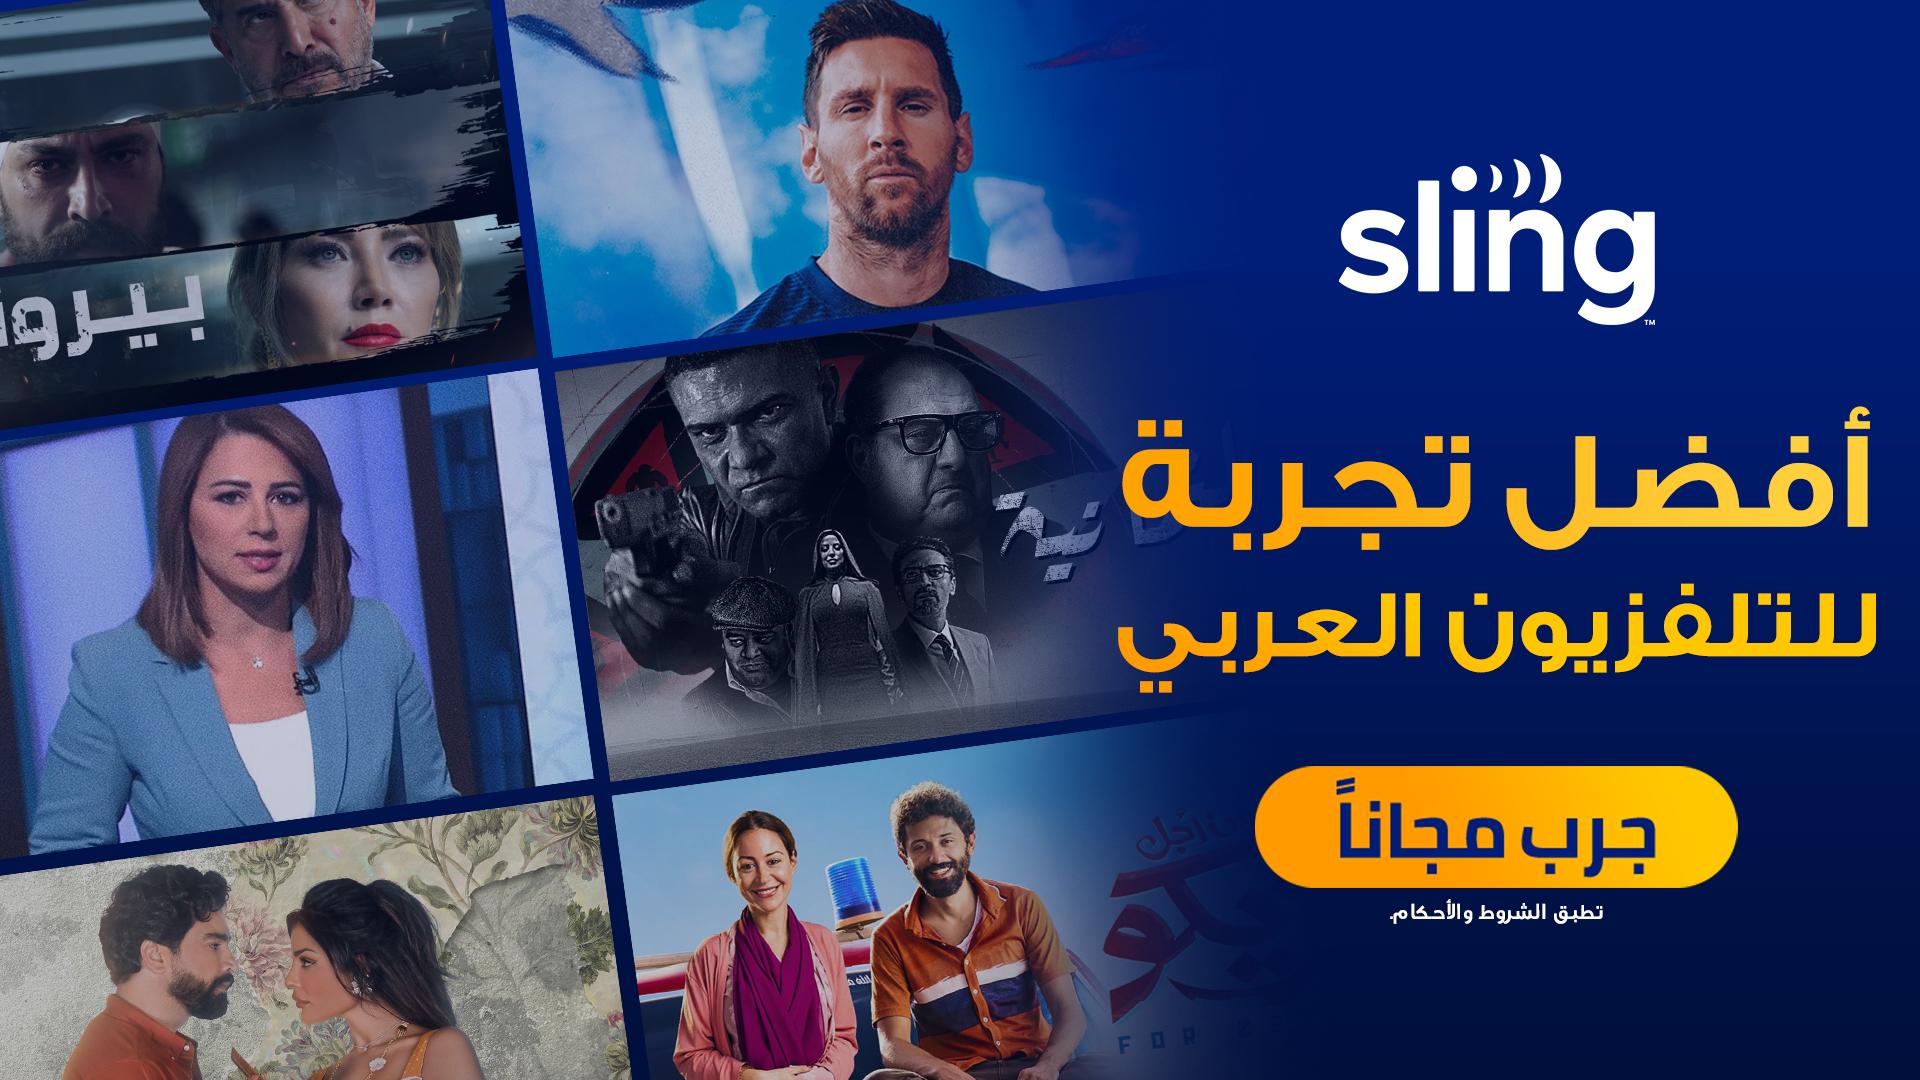 تعيد قناة الجزيرة إطلاق خدمة البث العربية “Sling” للمشاهدين الأمريكيين